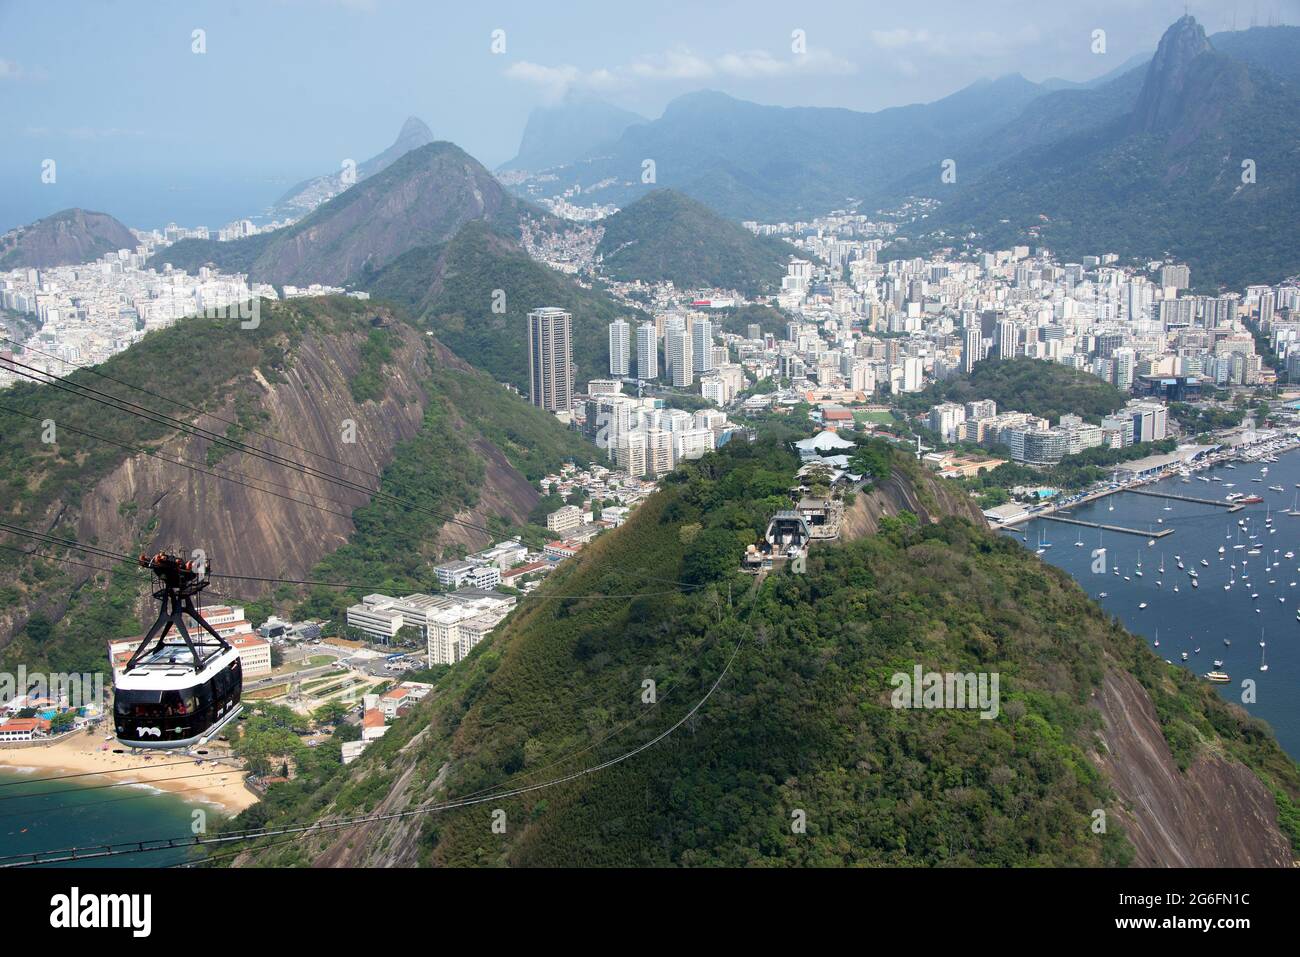 Rio de Janeiro, city and Cerro del Corcovado with Cristo Redentor view from Pao de Acucar. Brazil. Stock Photo